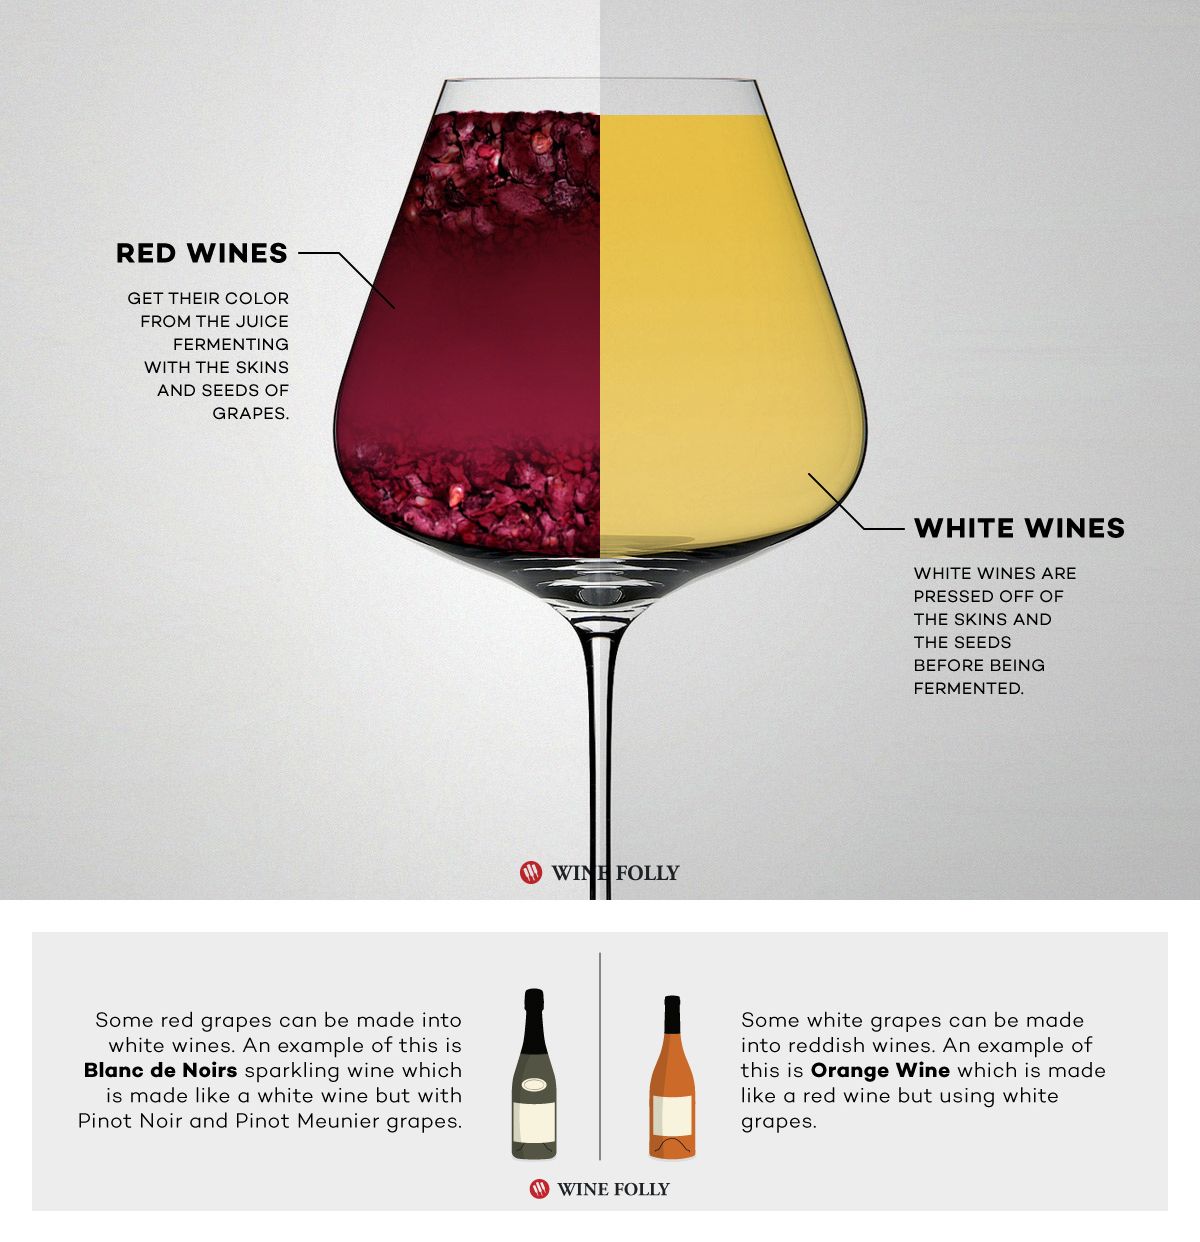 יין אדום לעומת יין לבן מותסס אחרת על ידי יין האיוולת